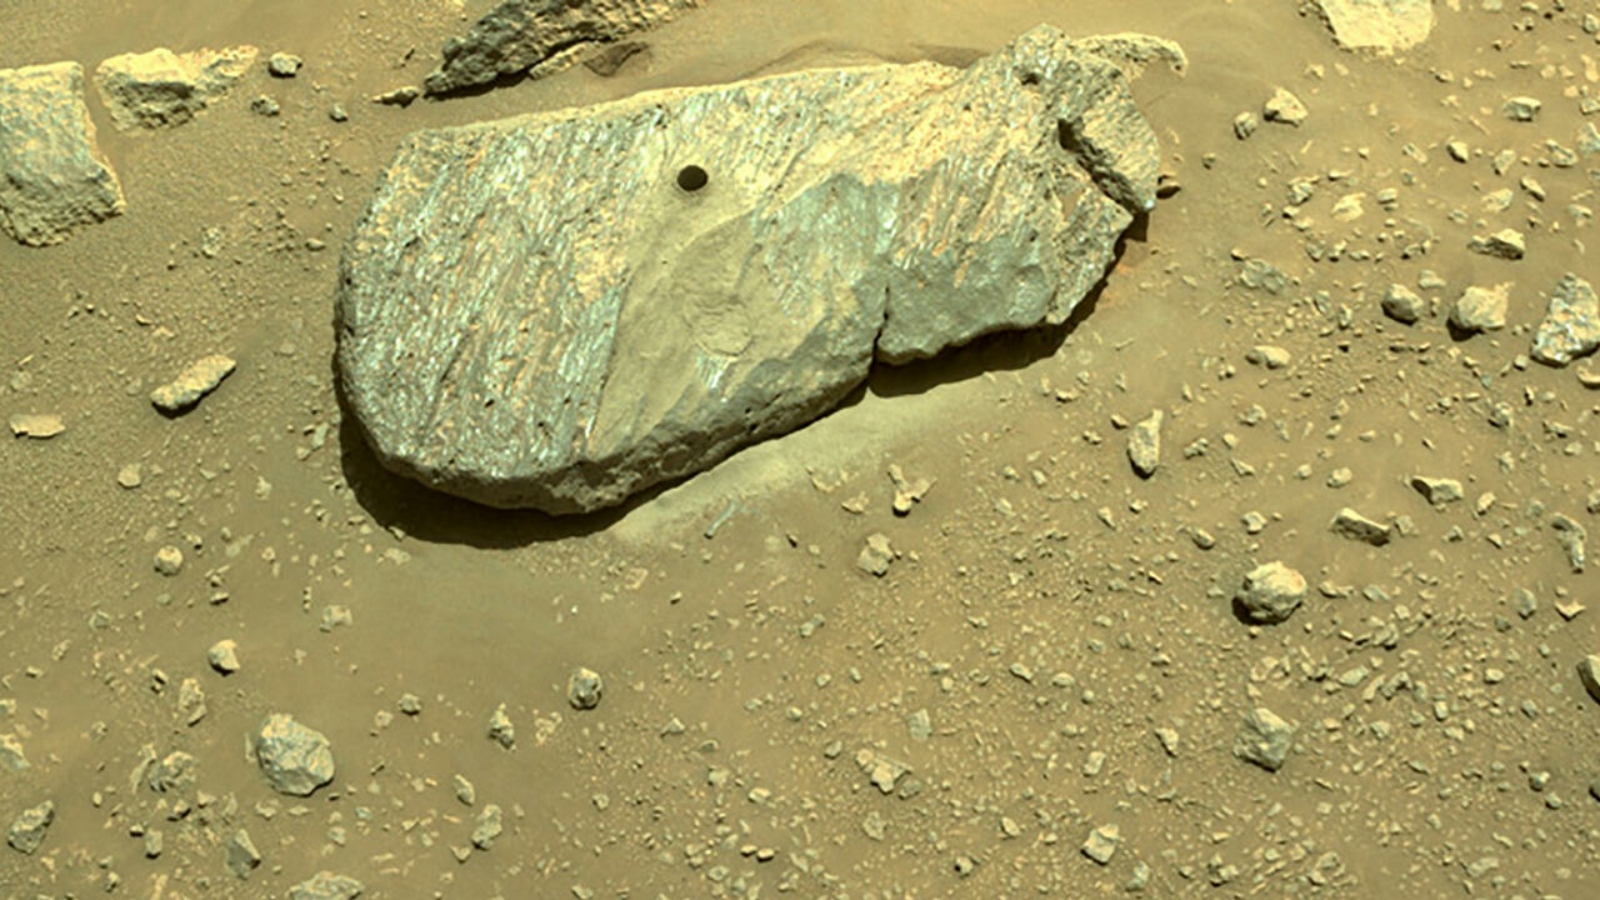 ثقب جرّاء الحفر في محاولة بيرسفرانس الثانية لجمع العينات من صخرة. الصورة التقطت في 1 أيلول/ سبتمبر 2021 (بواسطة إحدى كاميرات الملاحة بالمركبة الجوالة).